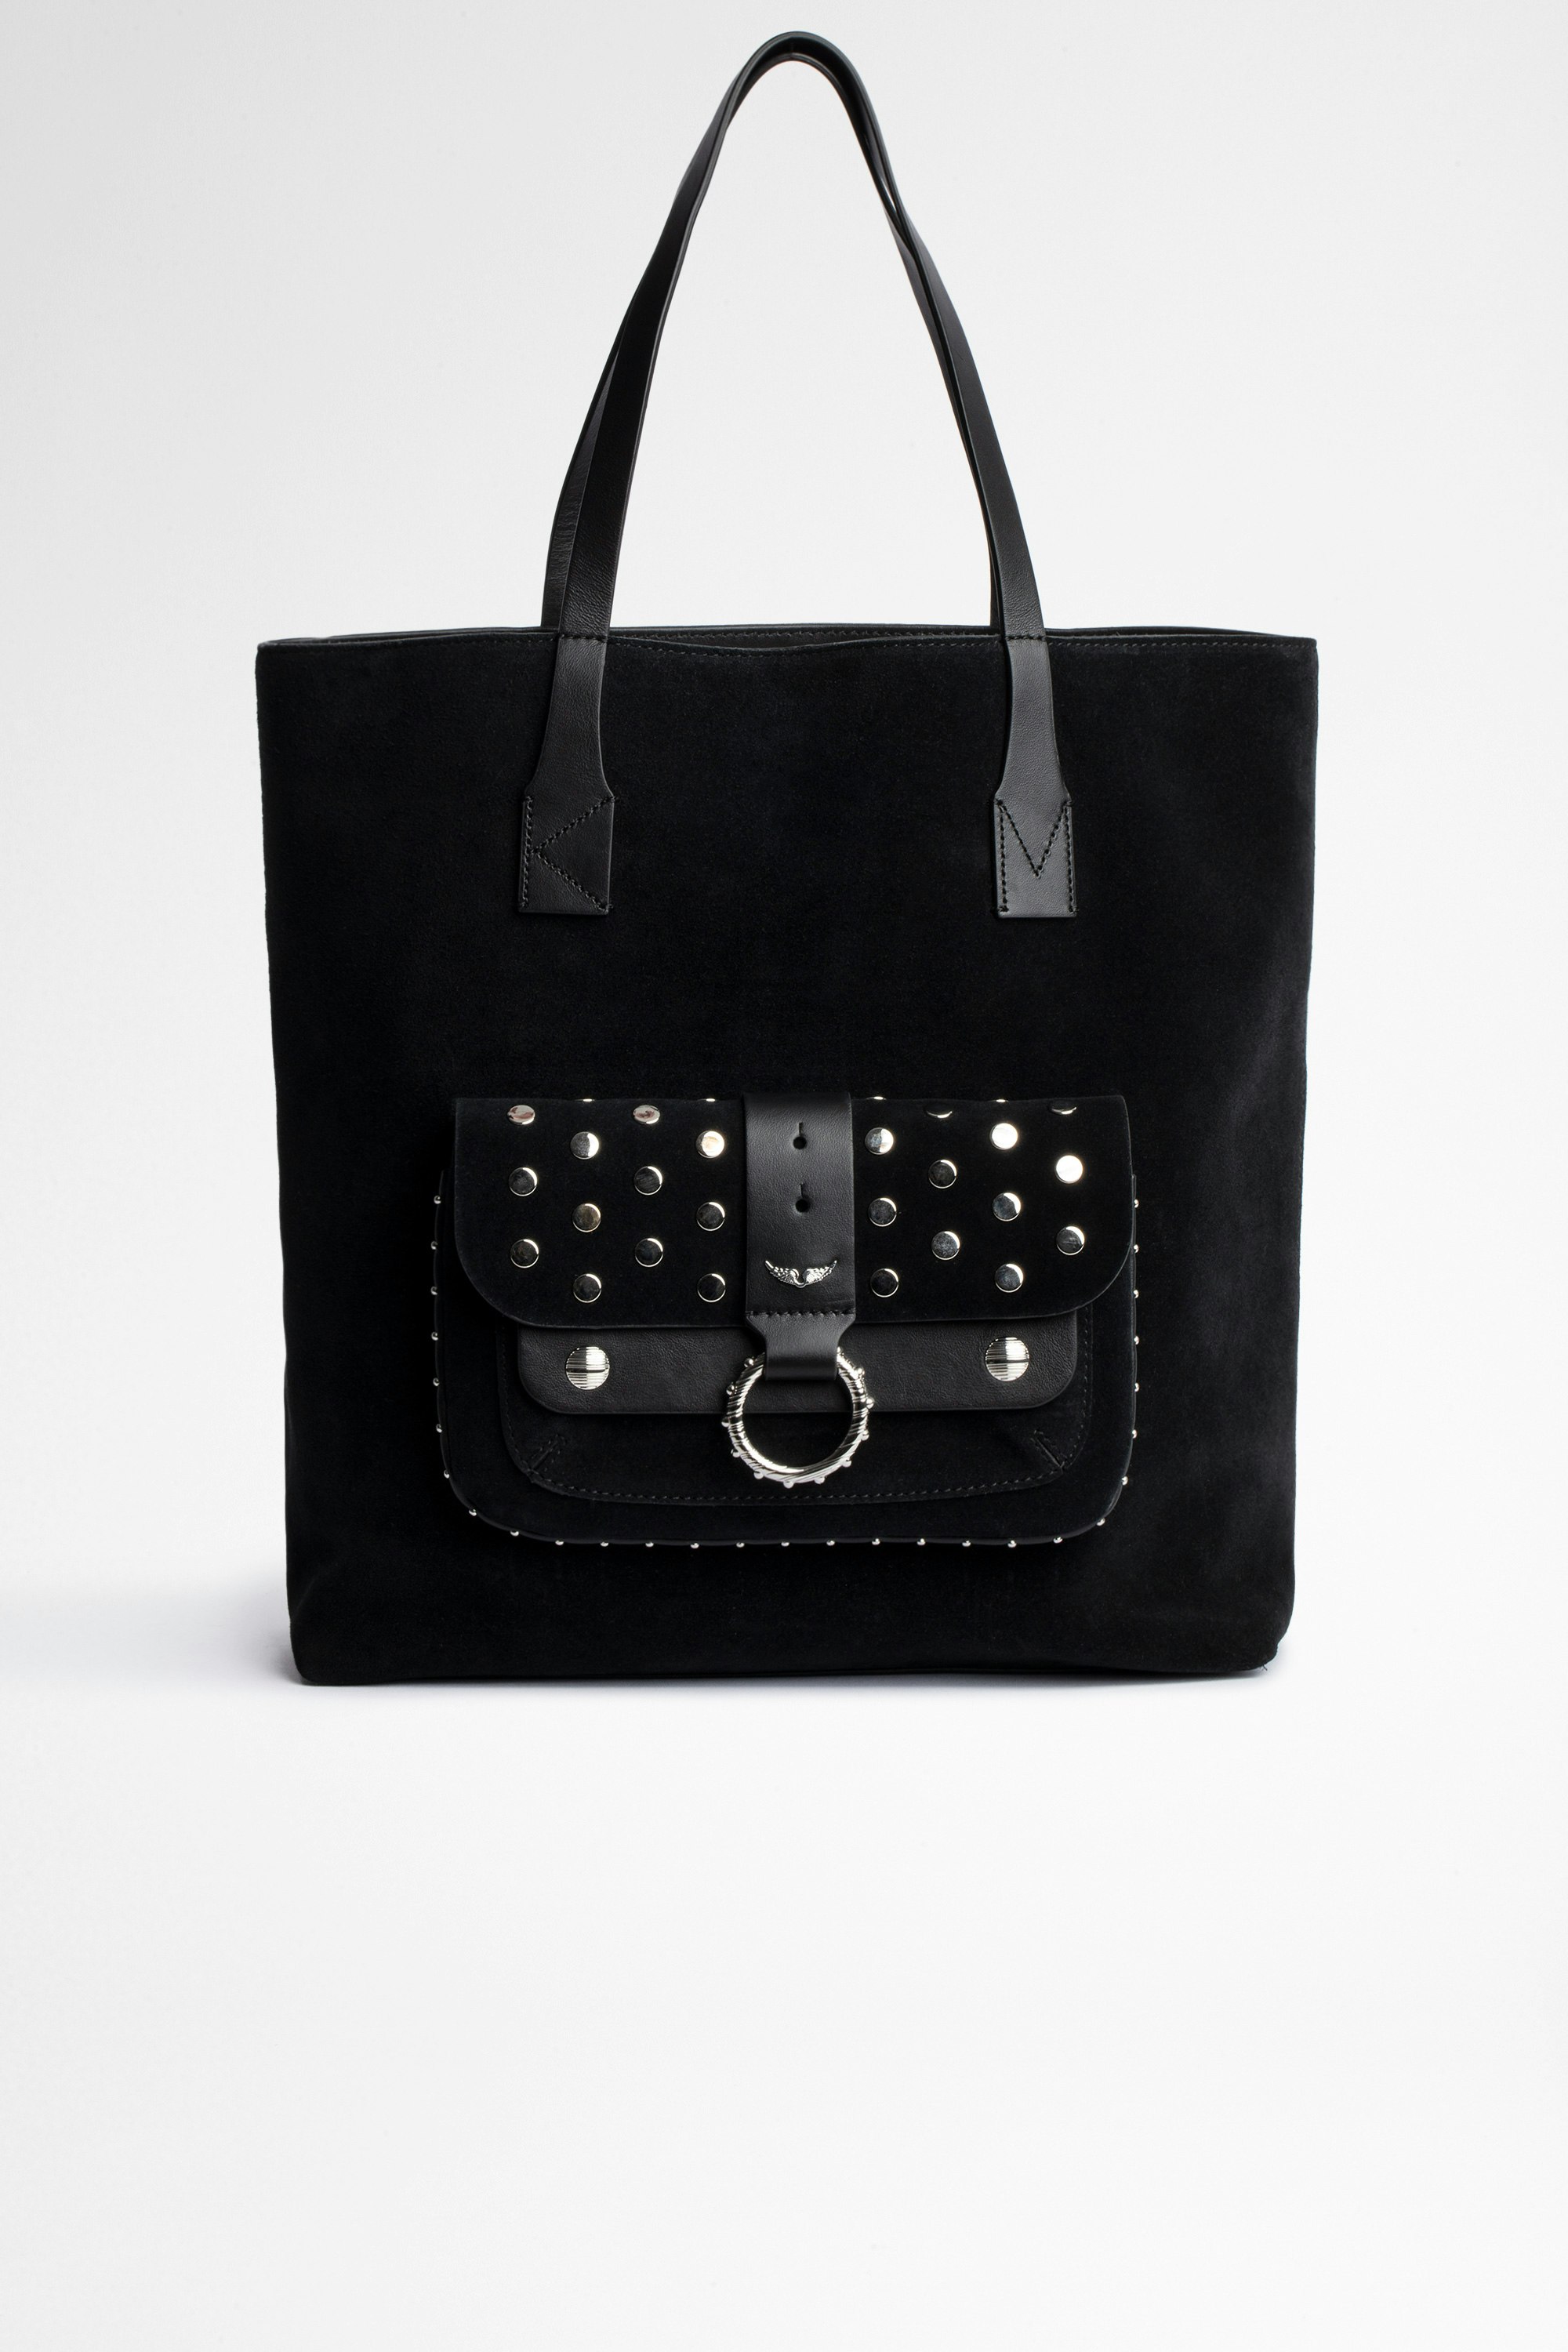 Tasche Kate Shopper Tote Bag aus schwarzem Leder. Mit dem Kauf dieses Produkts unterstützen Sie eine verantwortungsvolle Lederproduktion gemäß der Leather Working Group.